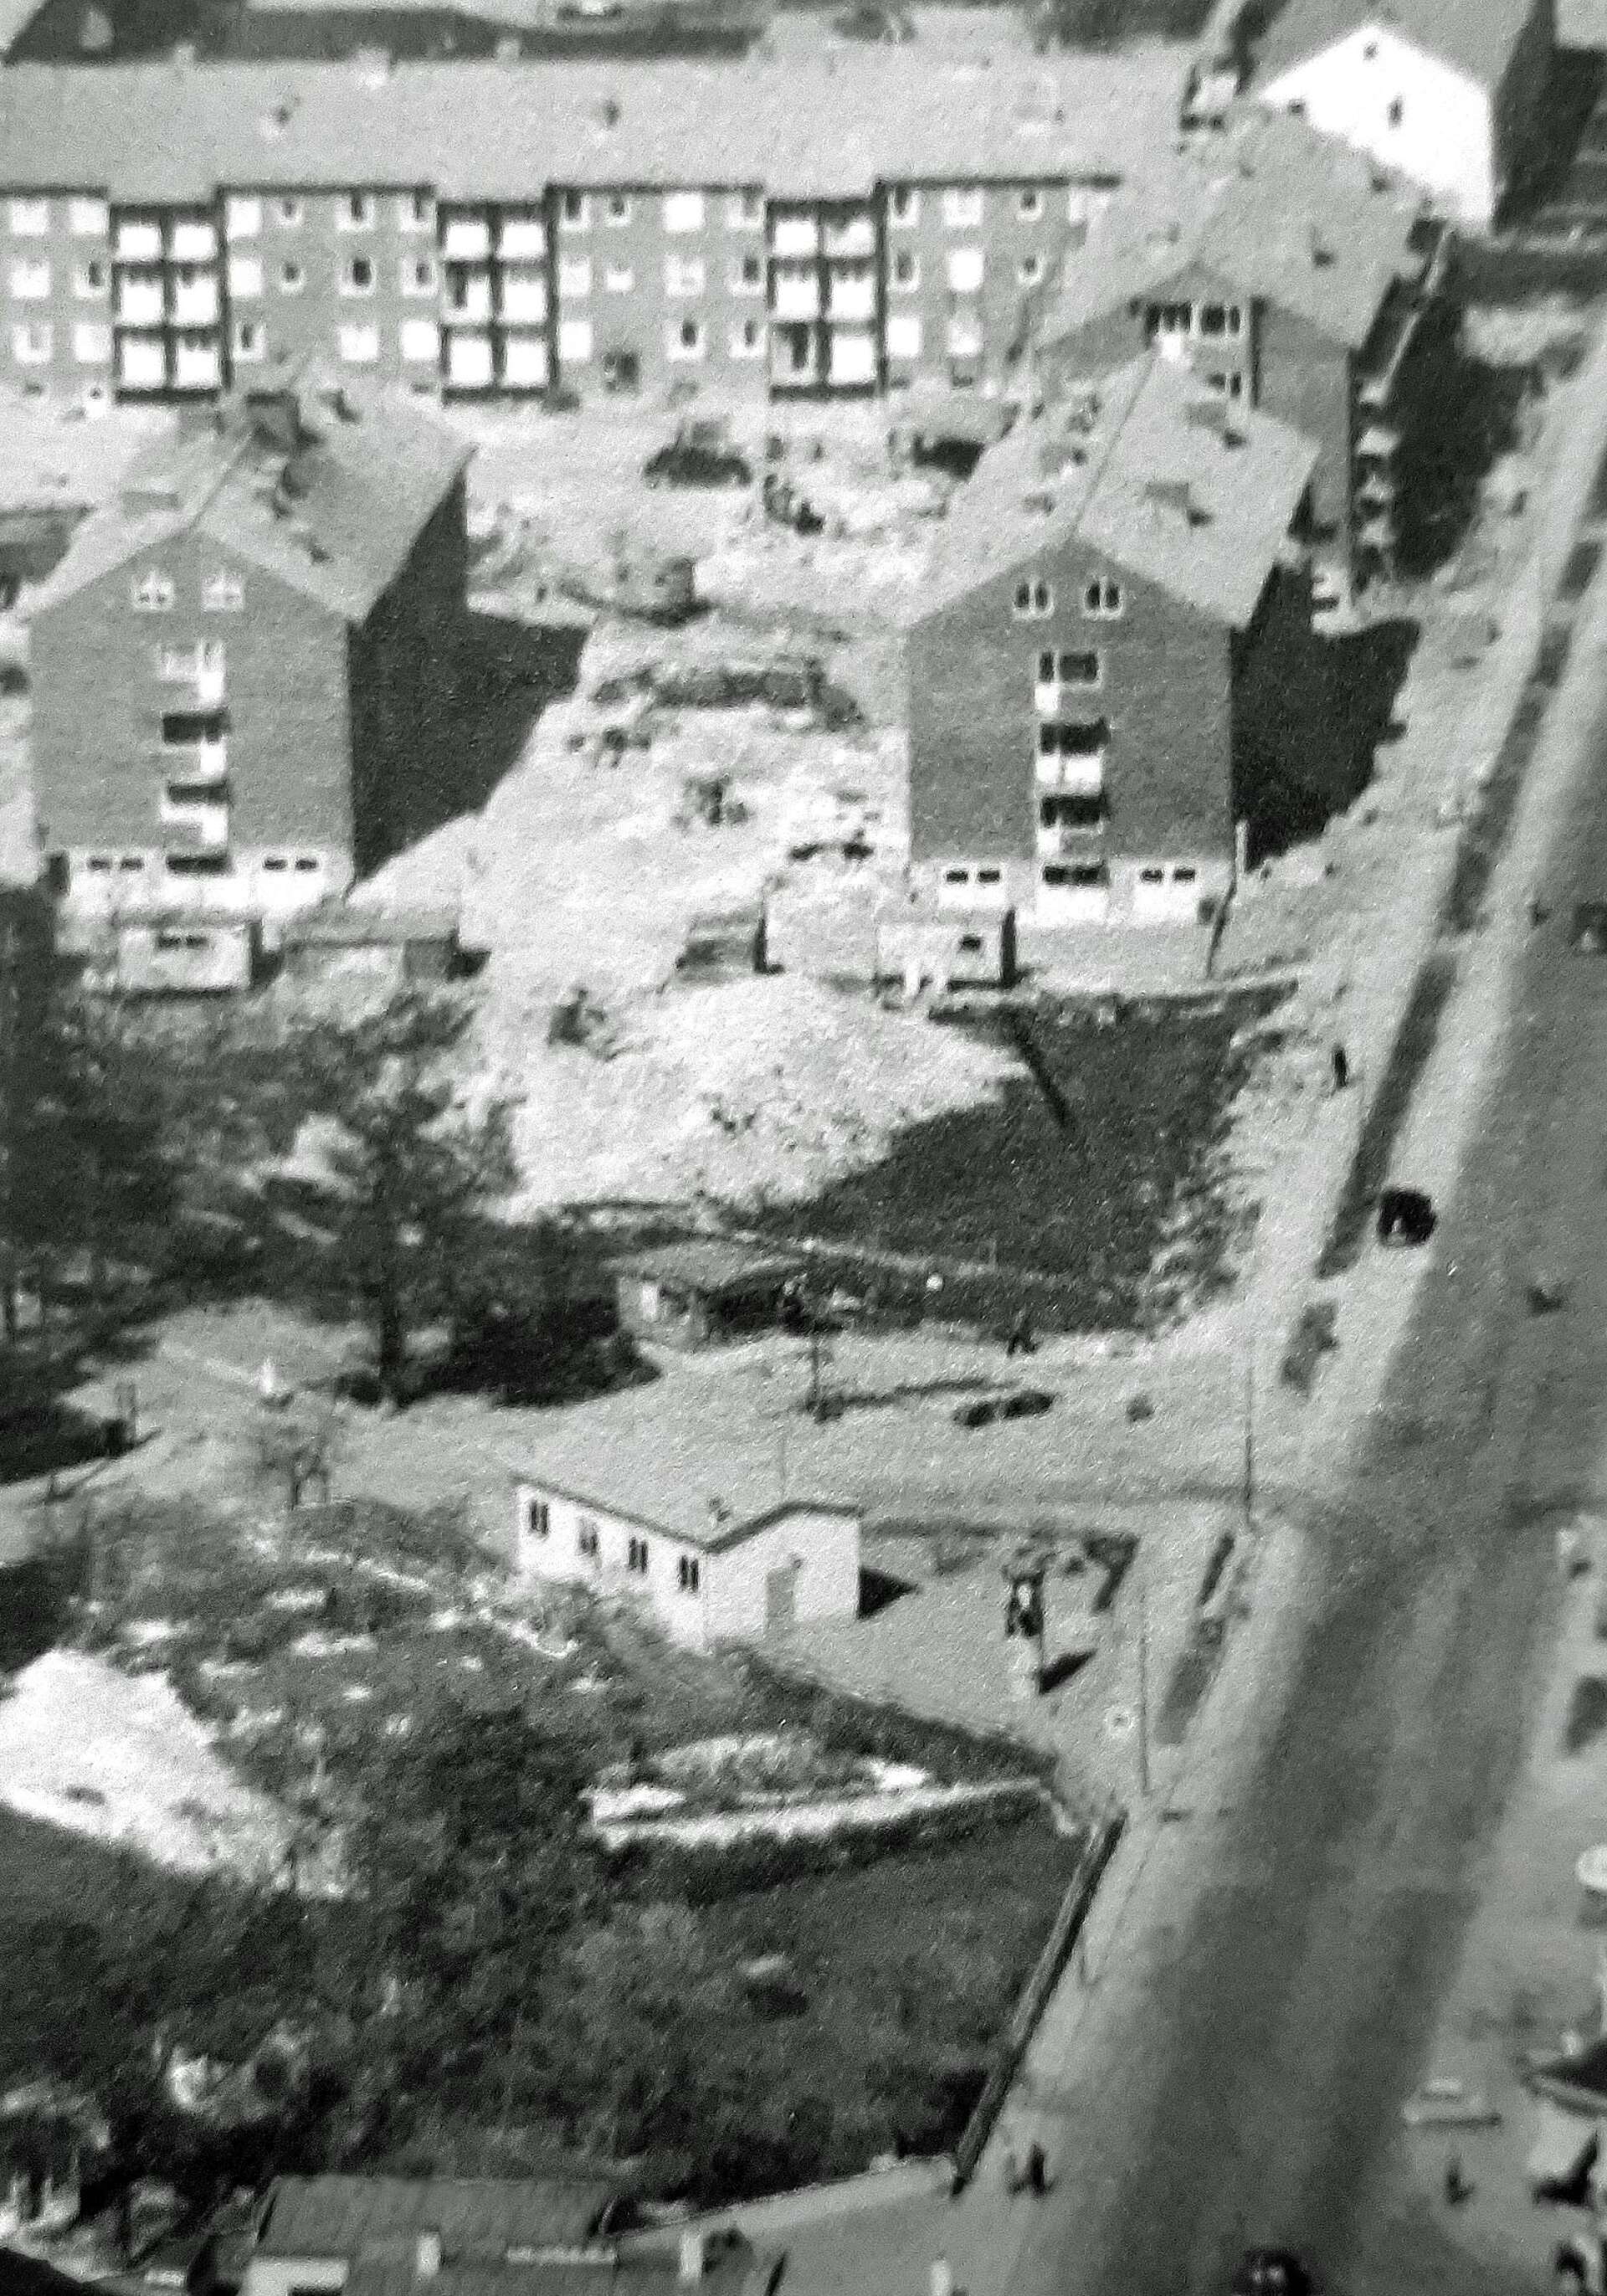 När kvarteret Vallen byggdes på 1950-talet låg Allékiosken där det sydligaste huset senare byggdes. På bilden kan man se kiosken mellan en större jordhög och den vita förrådsbyggnaden.